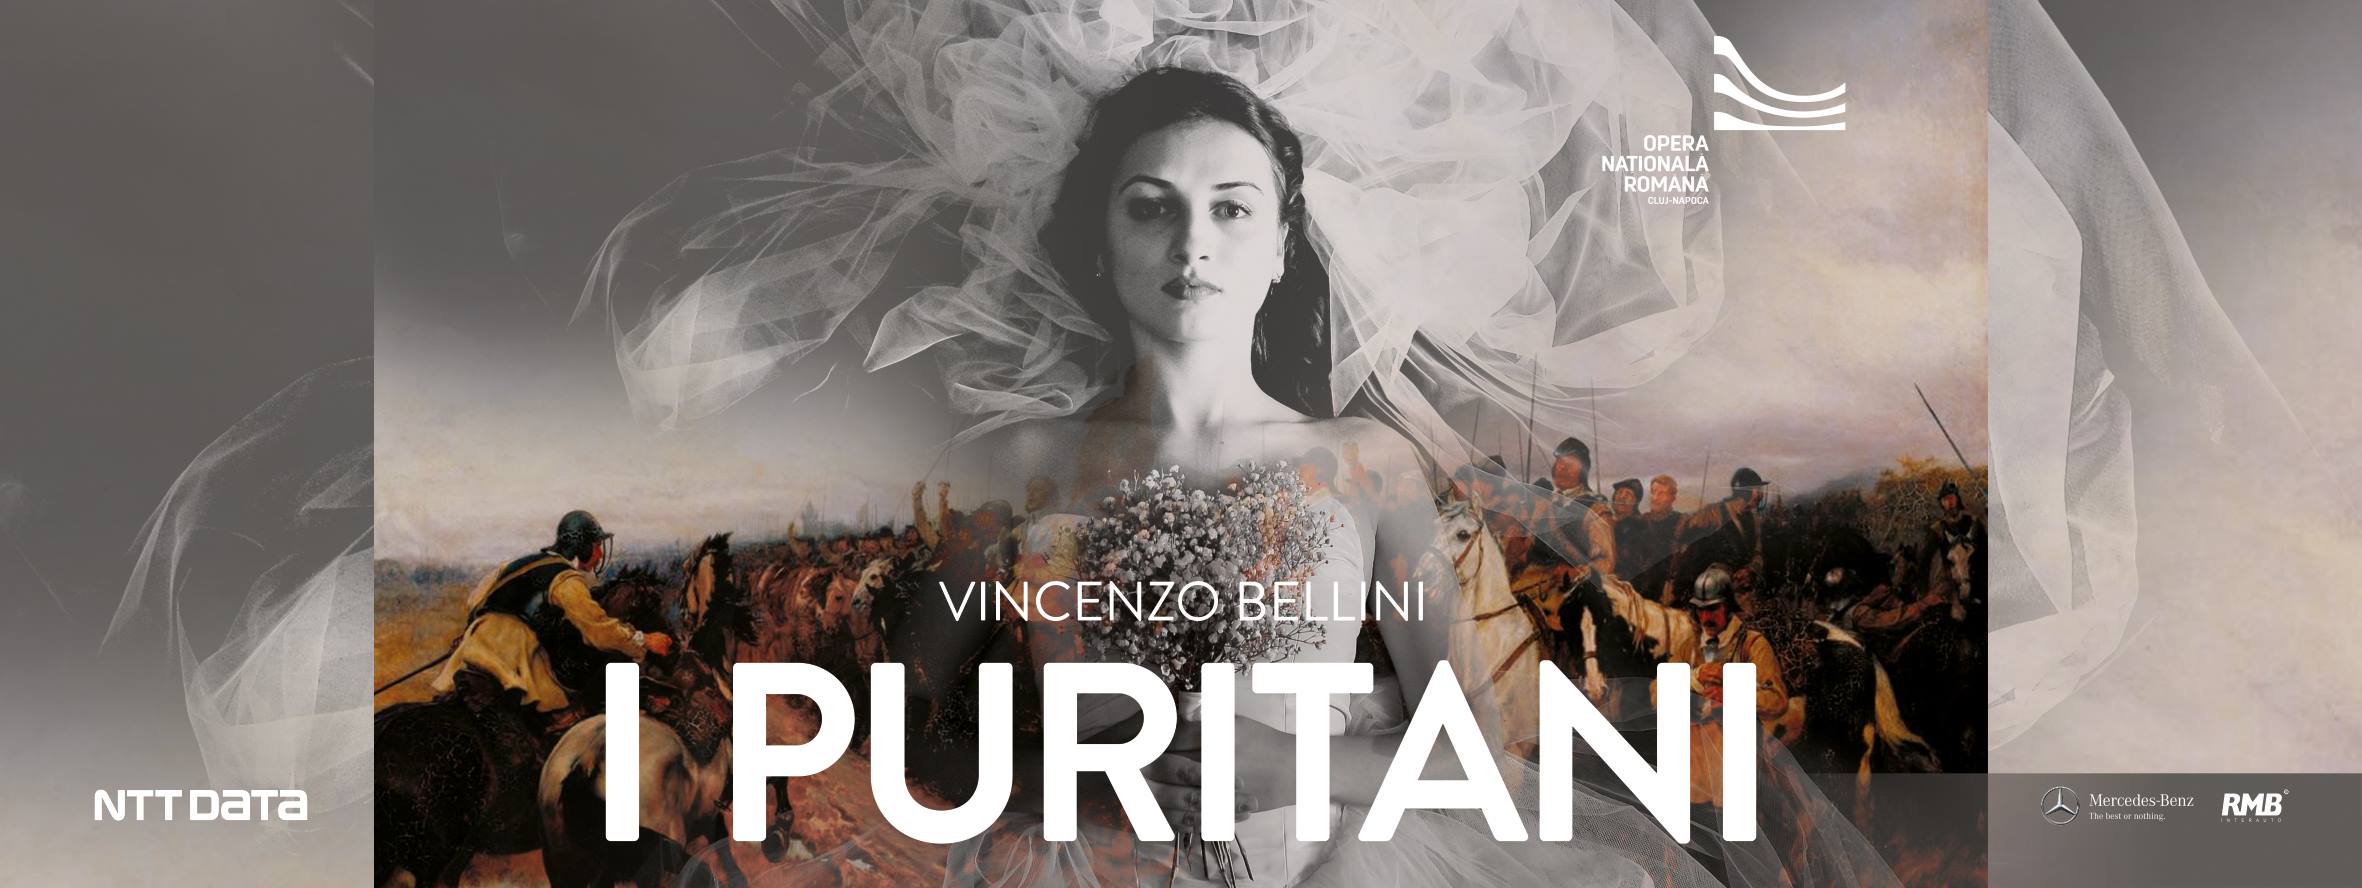 ”I Puritani” @ Opera Cluj